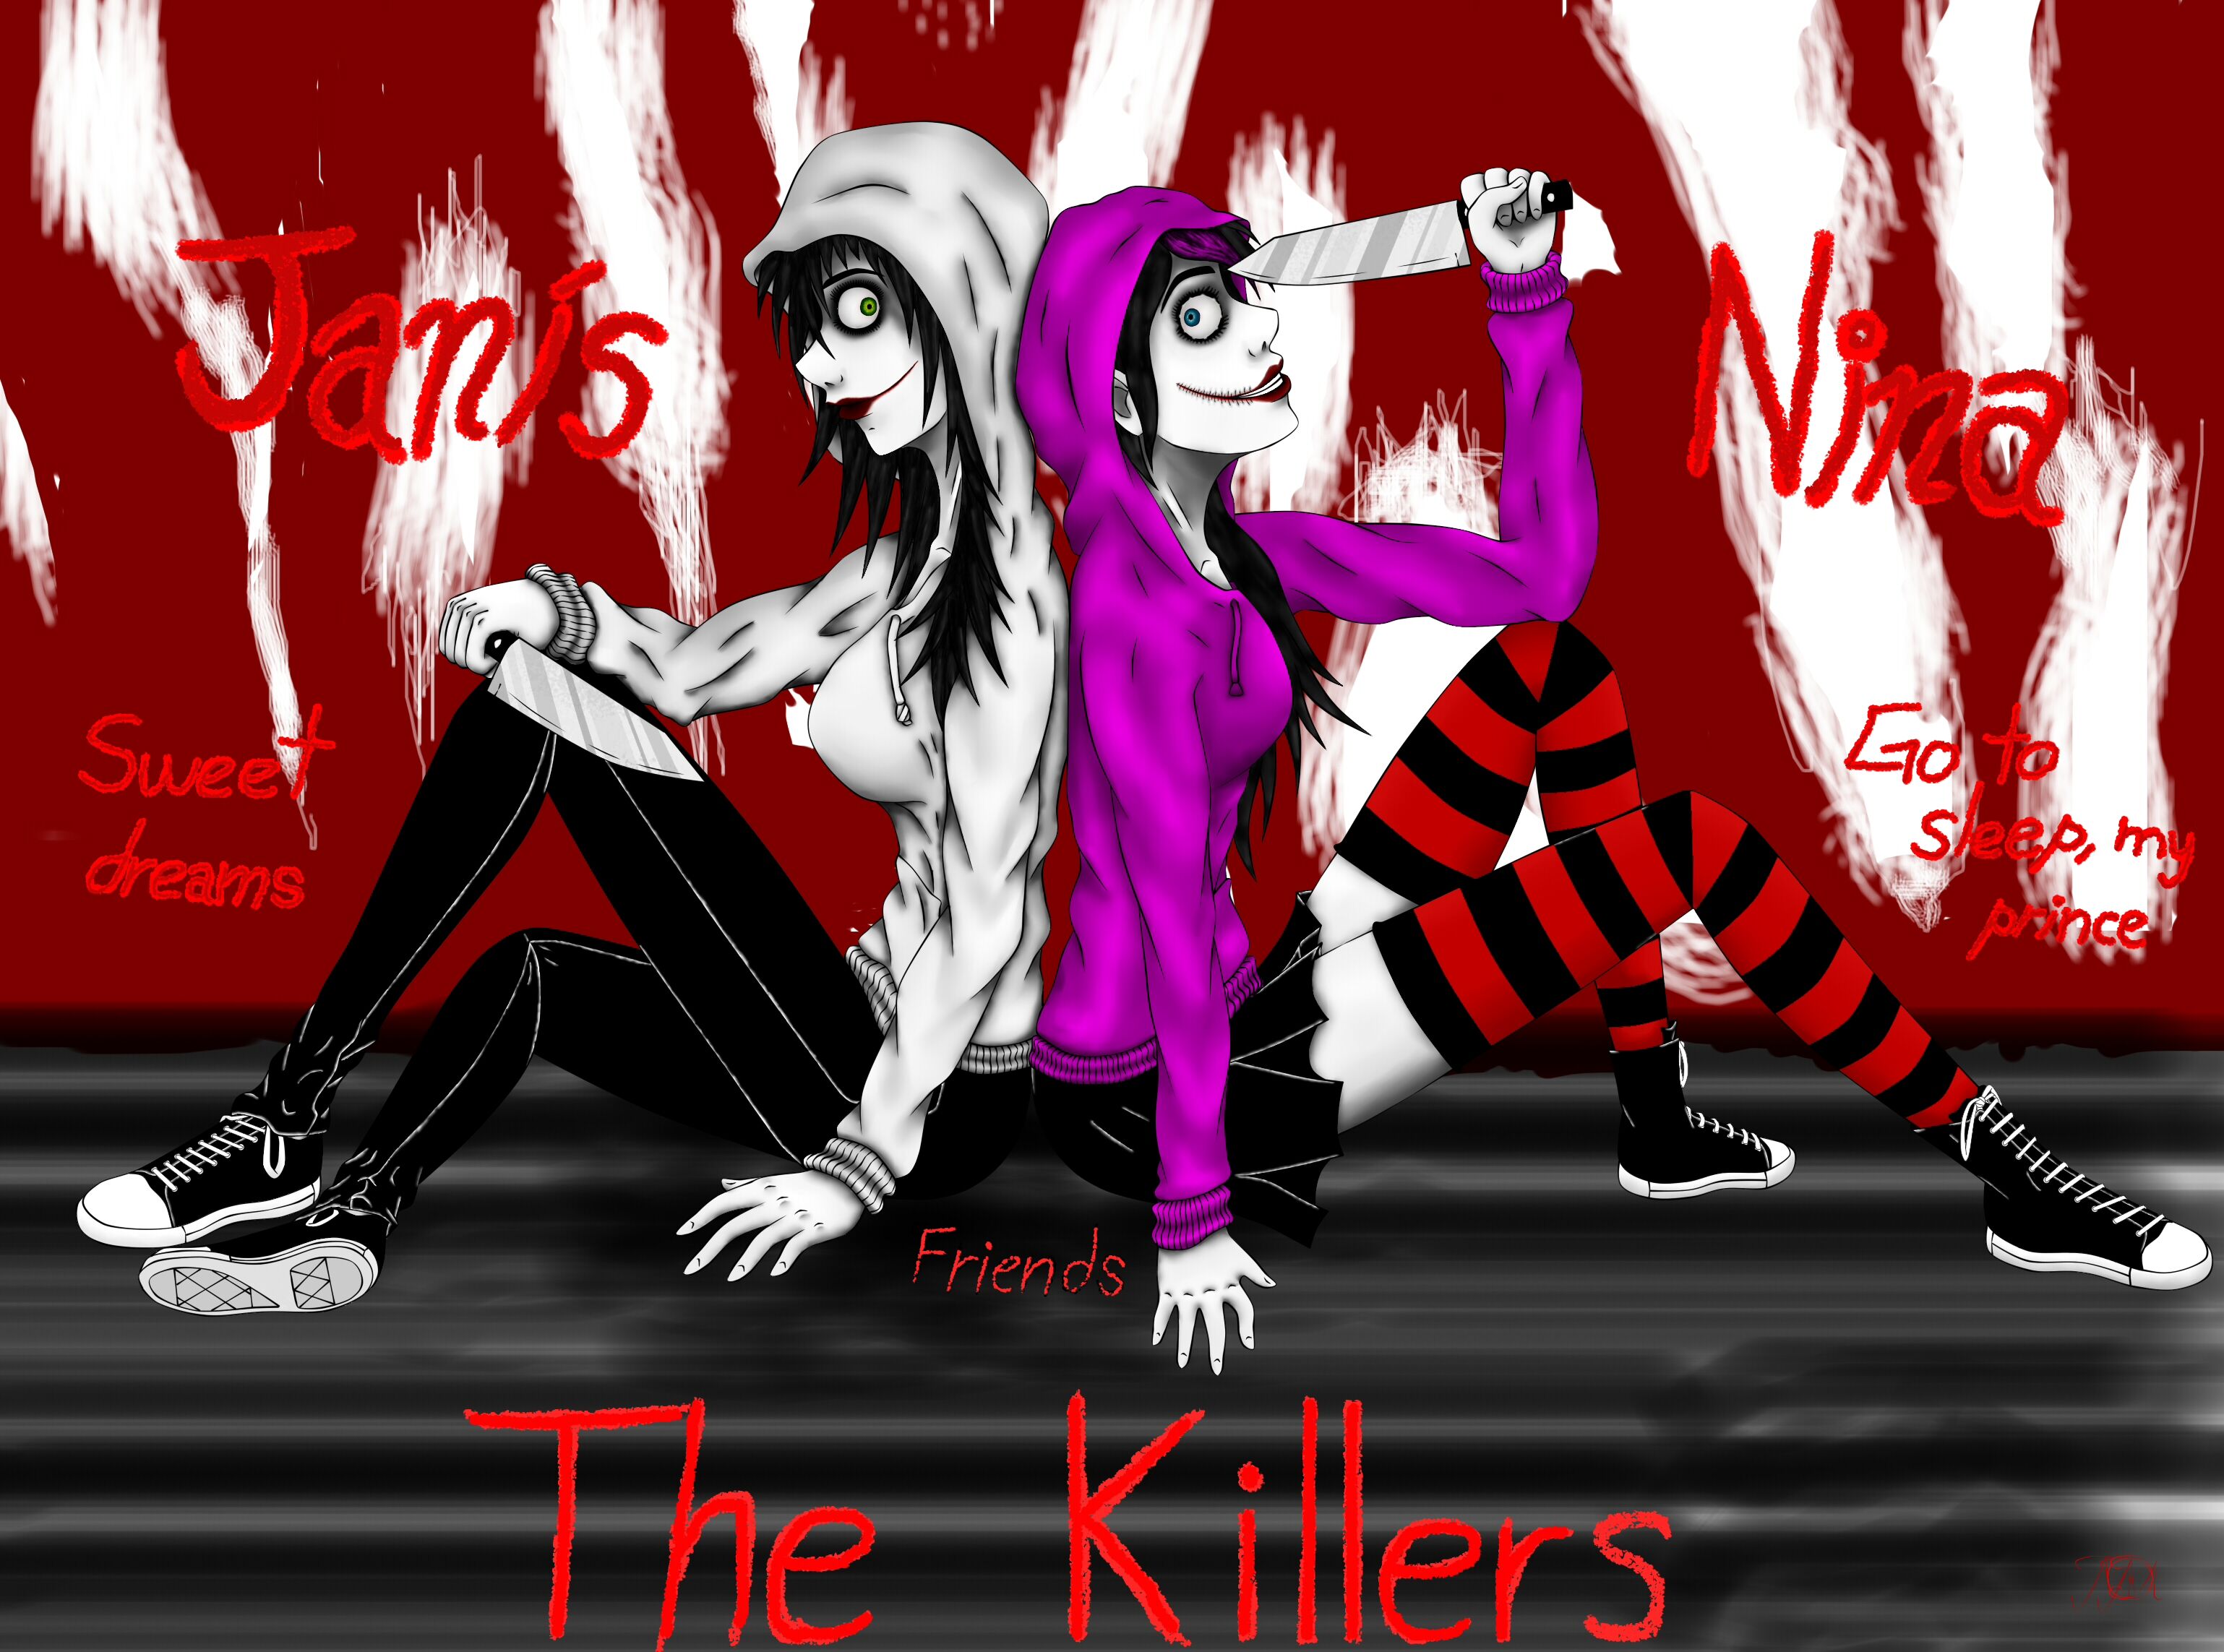 Jeff the killer x nina the killer, Wiki